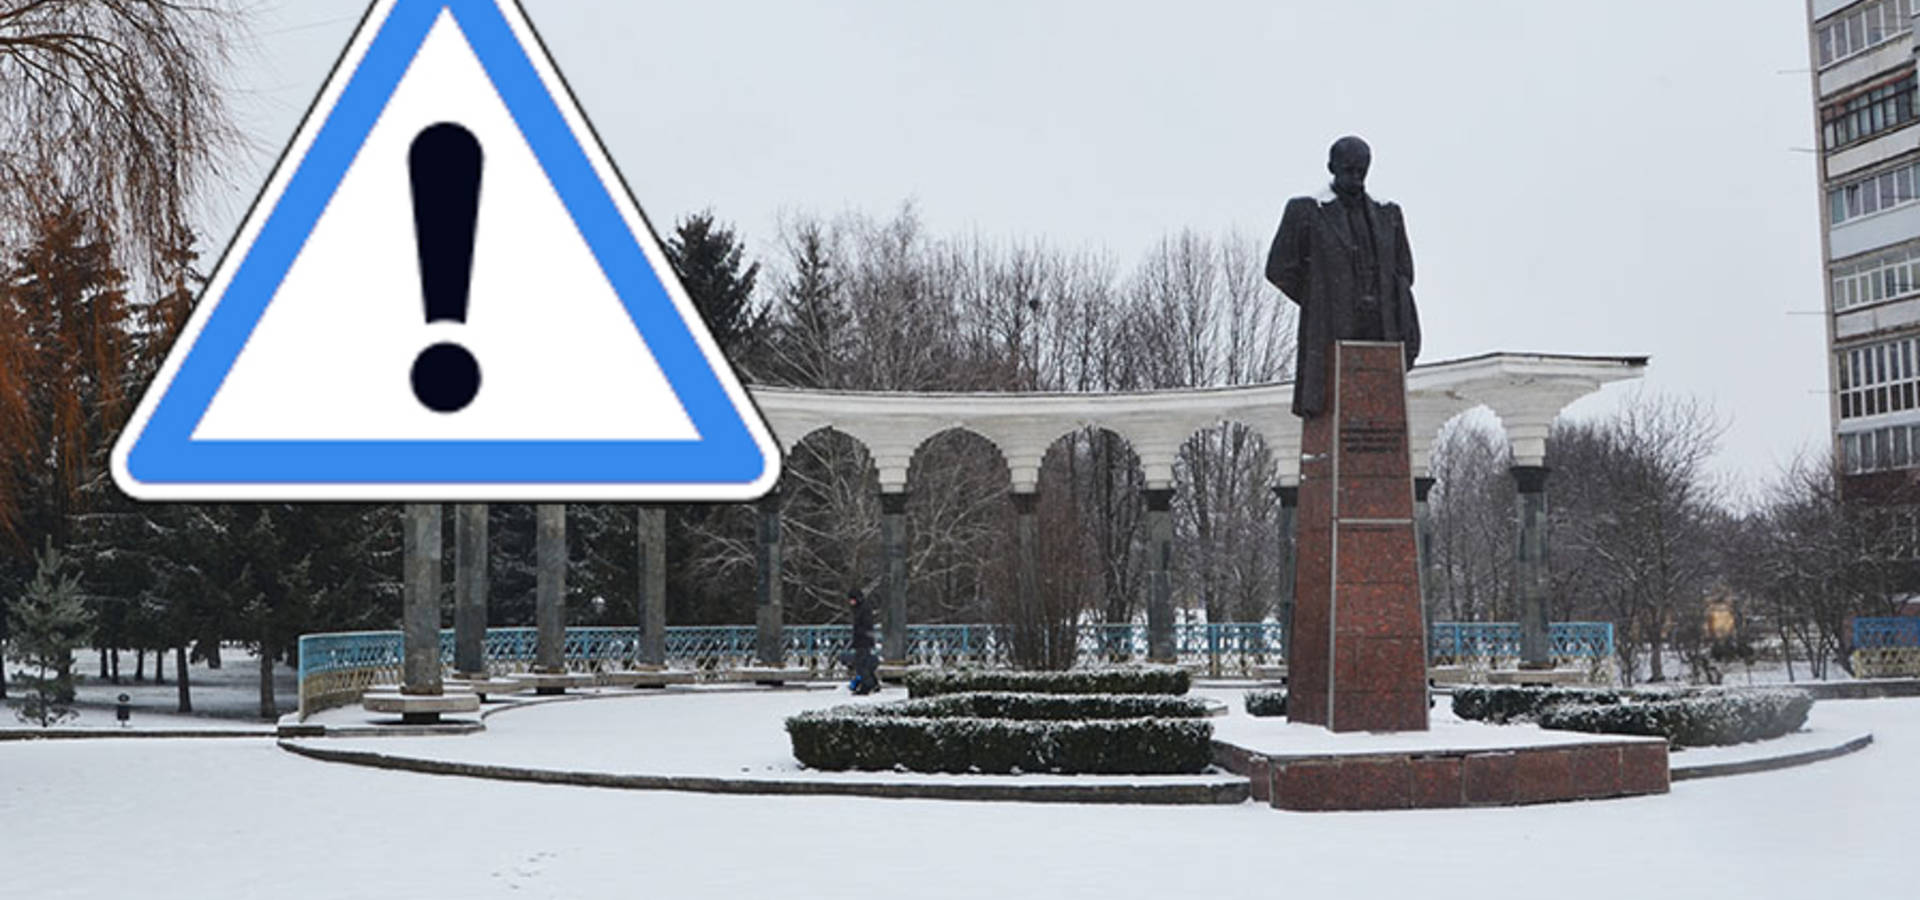 Цієї ночі у Хмільнику та області очікується снігопад. Жителів попереджають про небезпеку